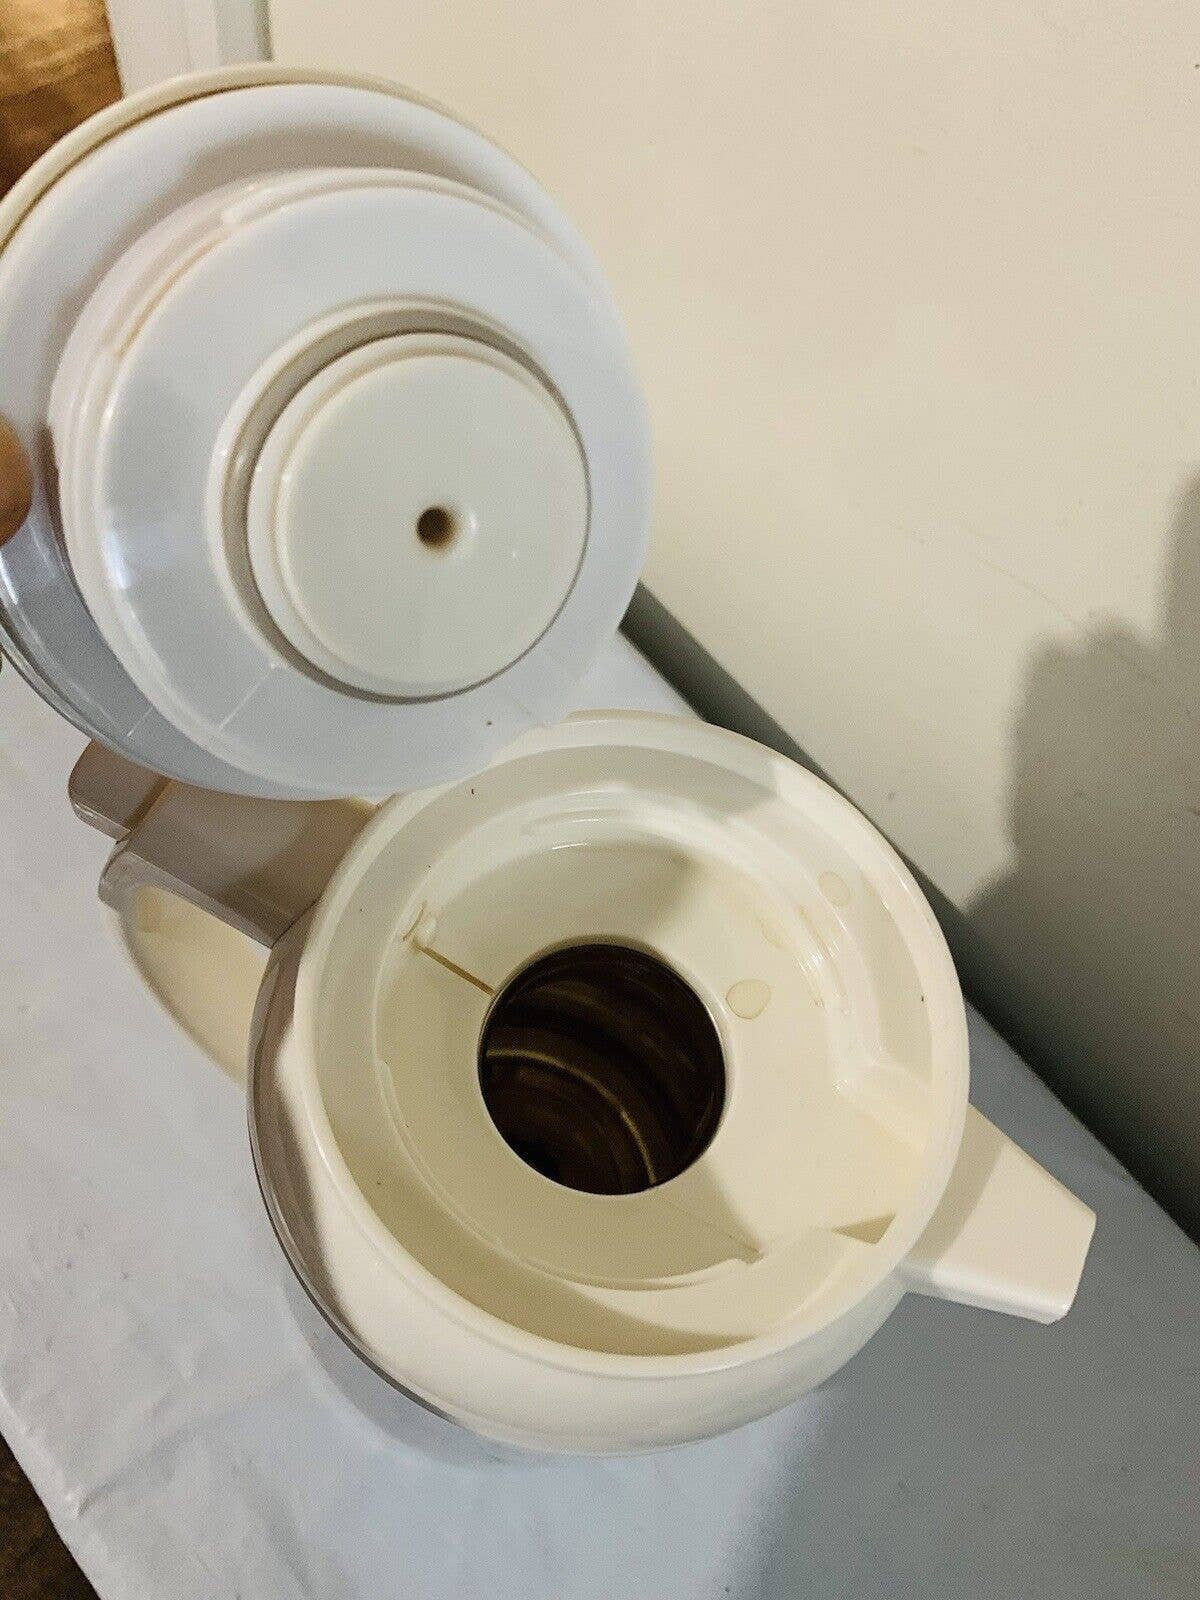 Zojirushi Premium Thermal Carafe 1.0 Liter White Made in Japan Tested 